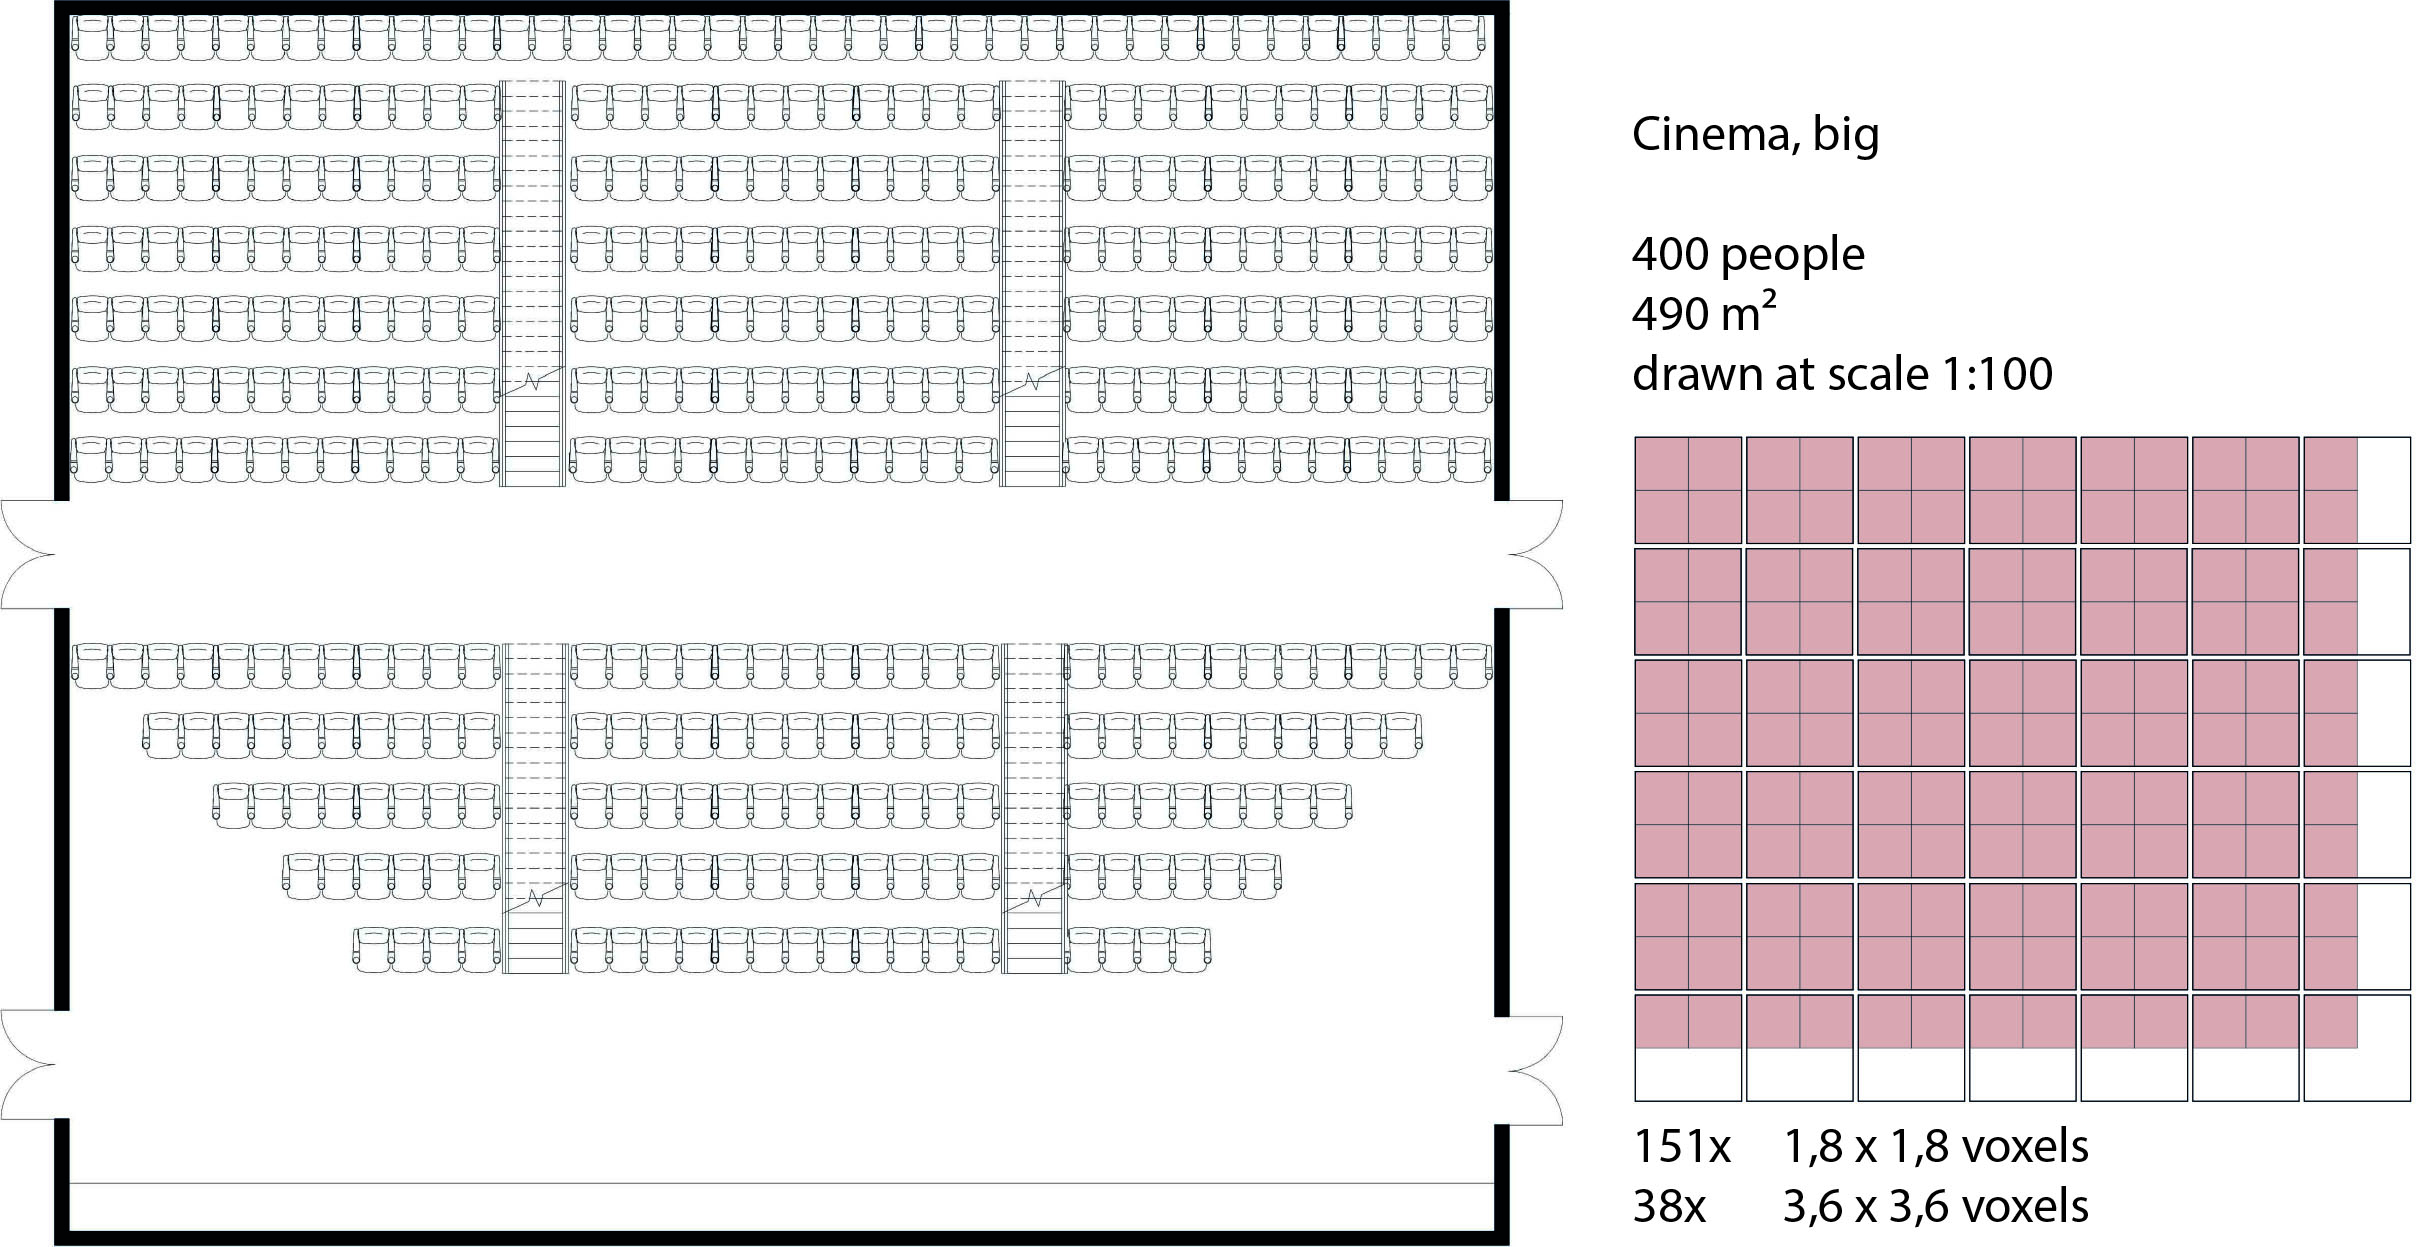 Floorplan - Cinema big